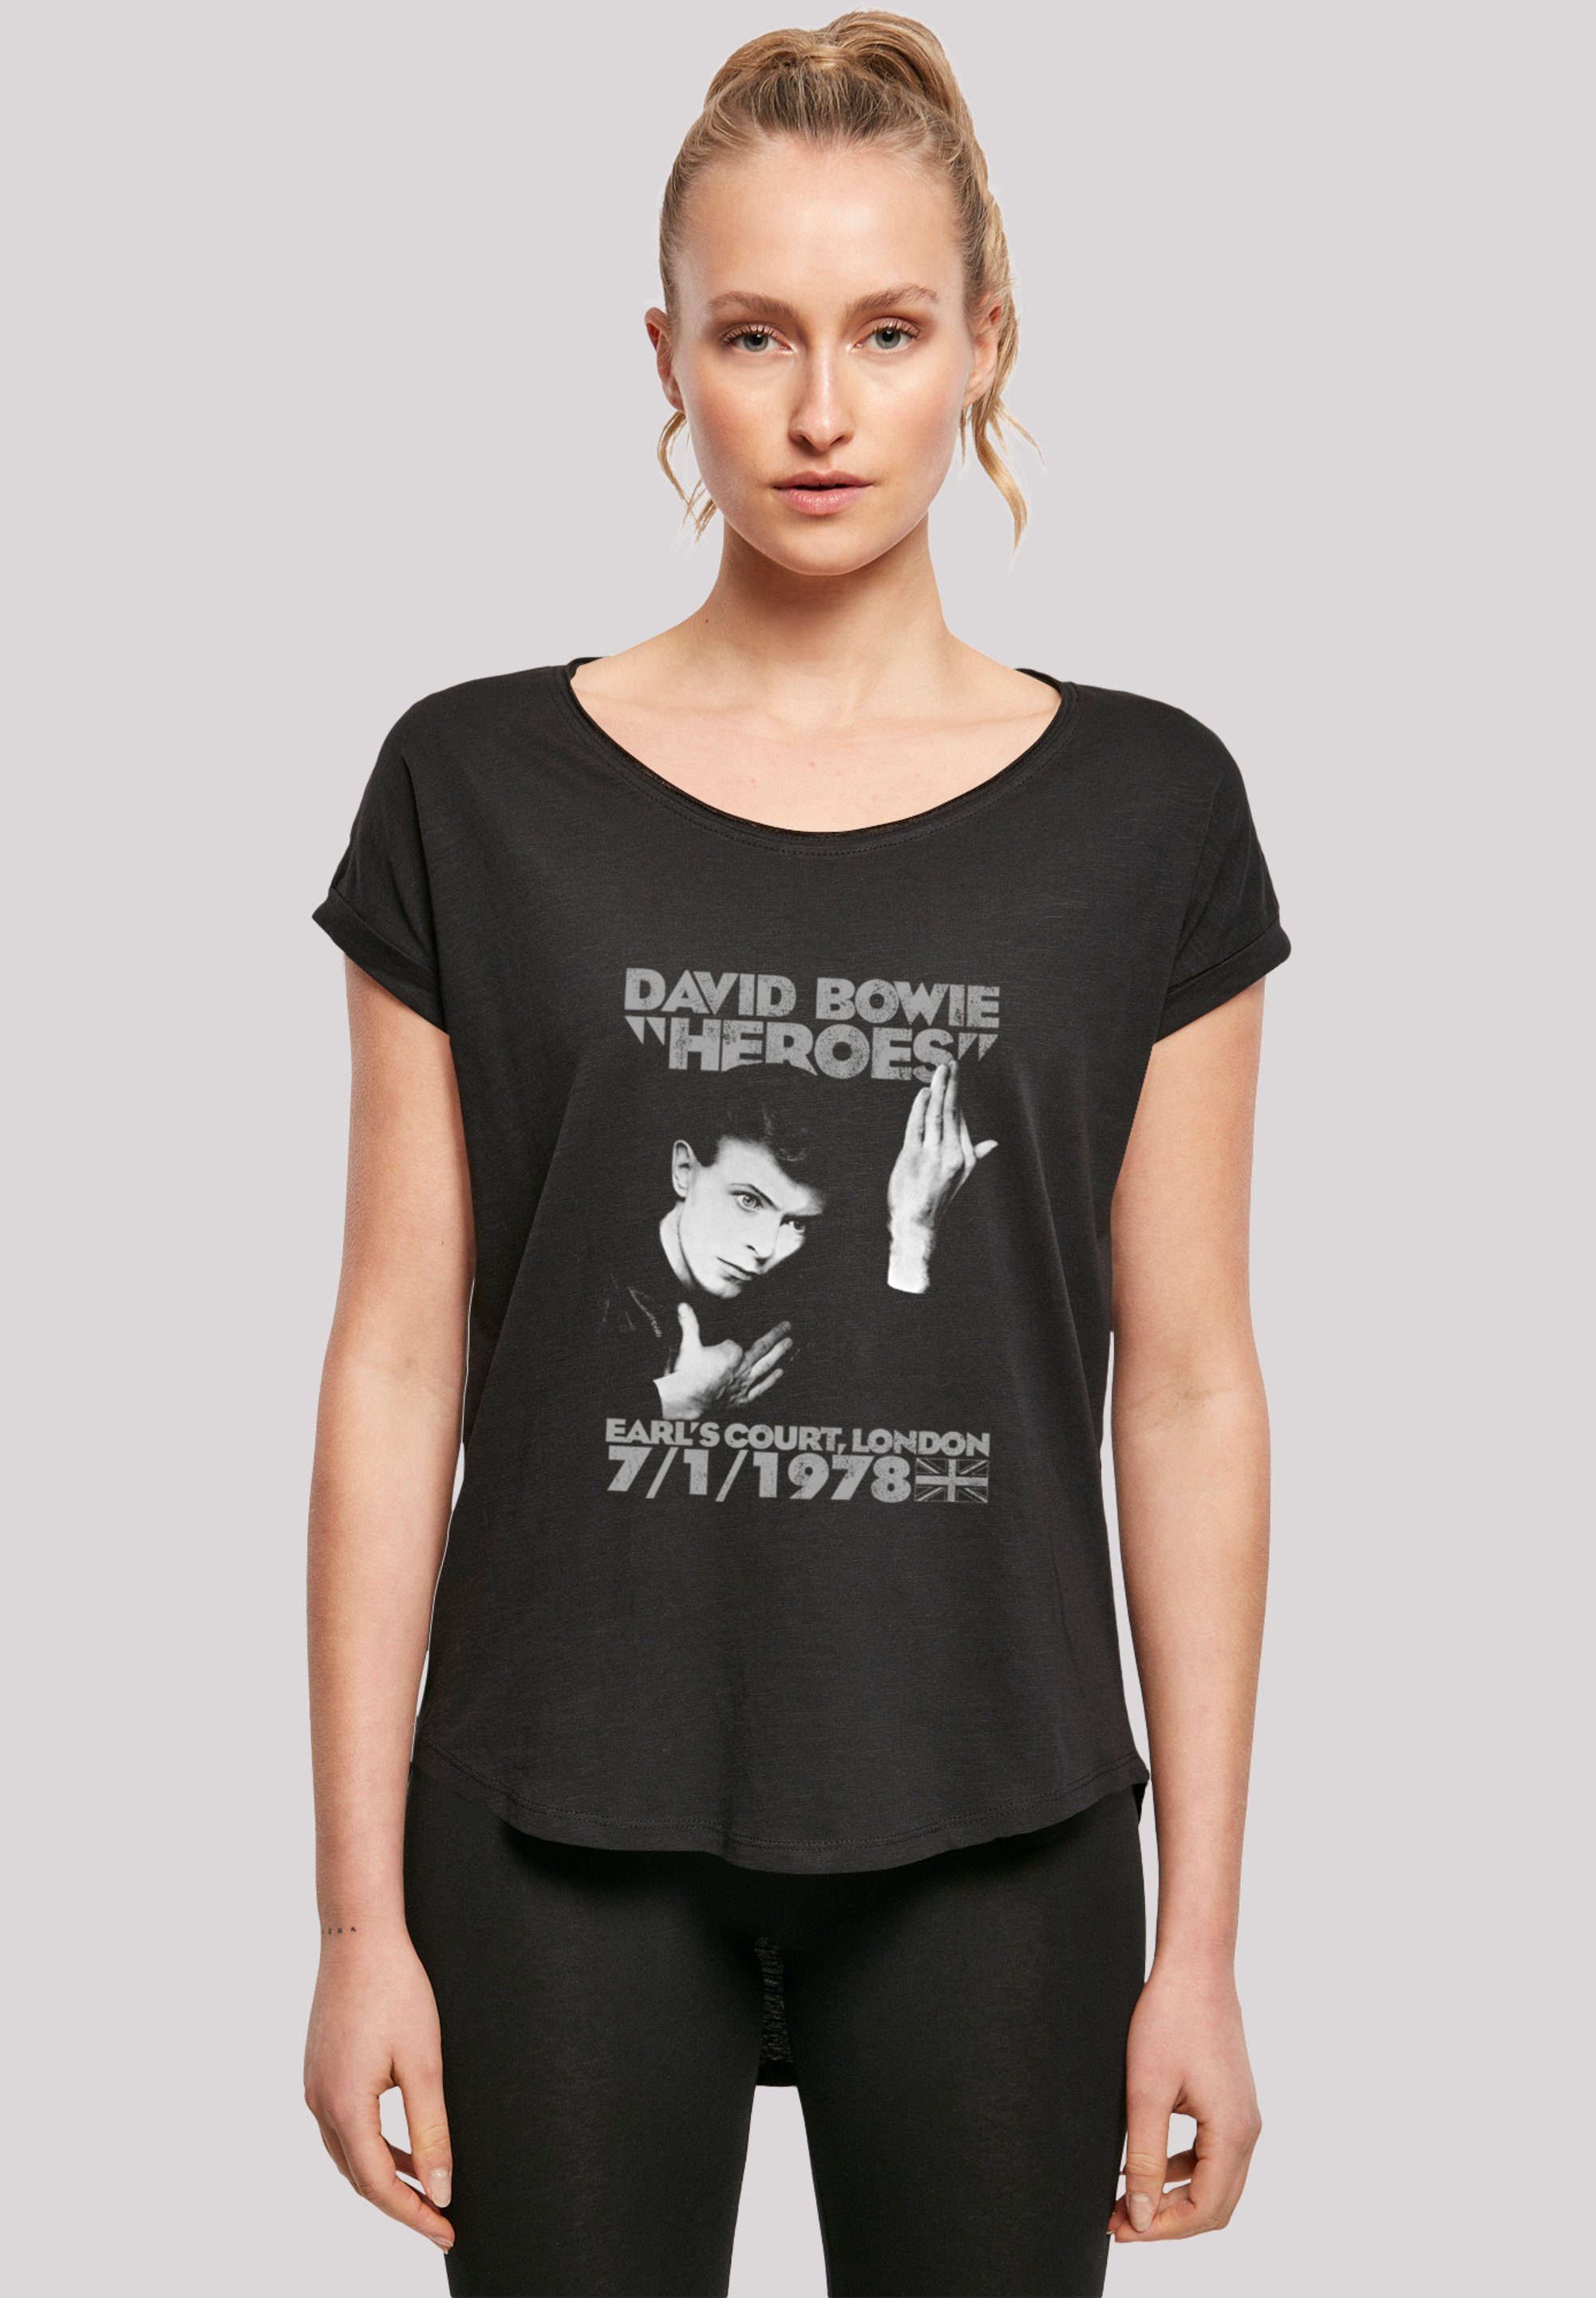 Print, T-Shirt F4NT4STIC David Bowie Heroes lang extra Damen T-Shirt Court geschnittenes Earls Hinten